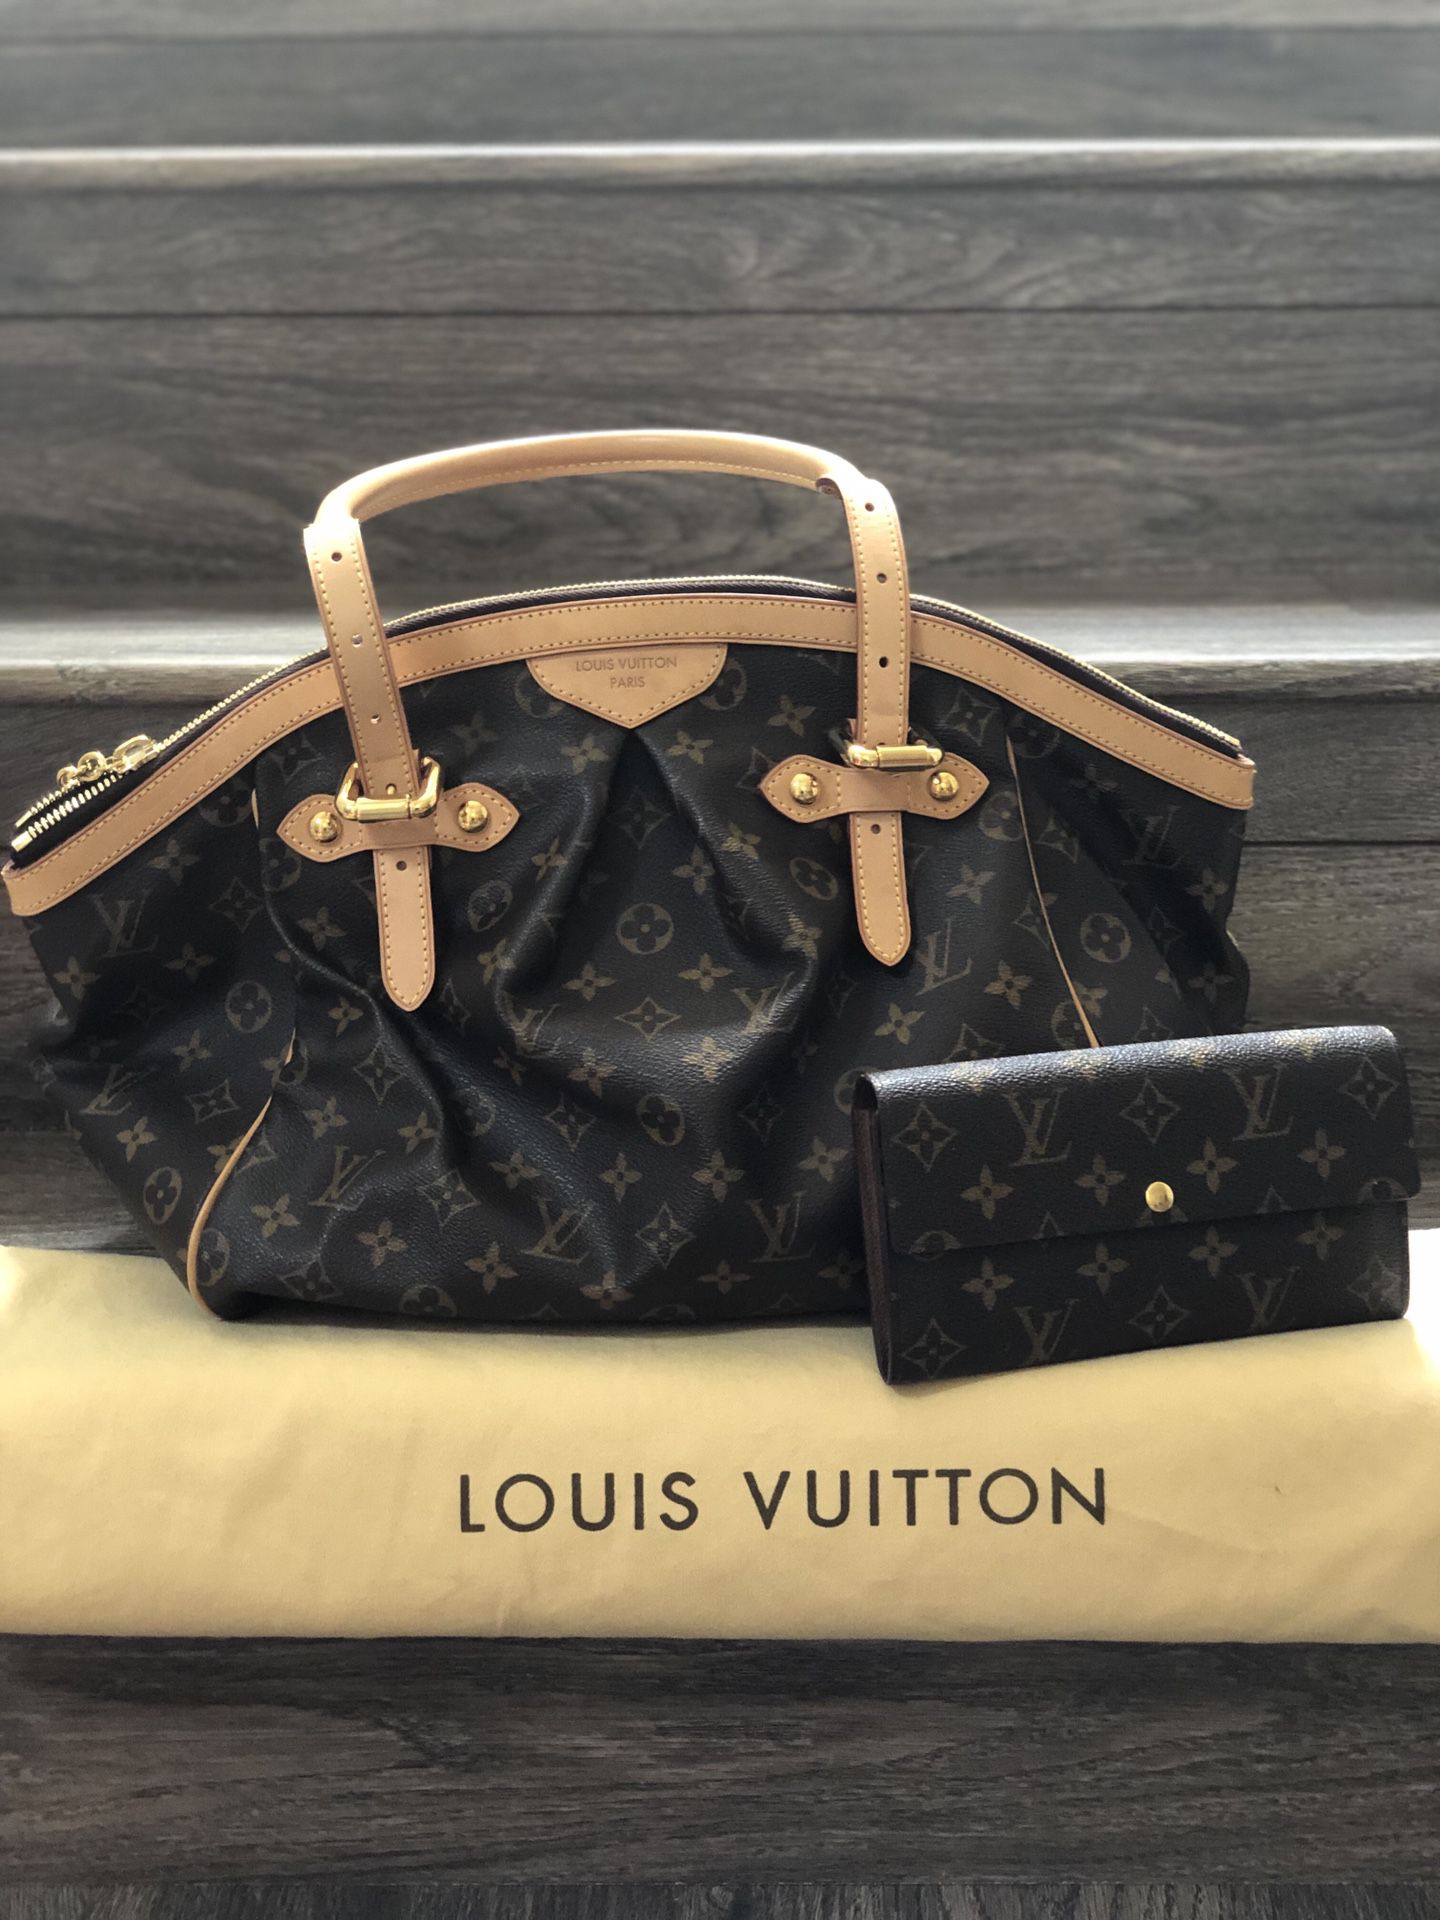 Louis Vuitton Tivoli Bag and wallet